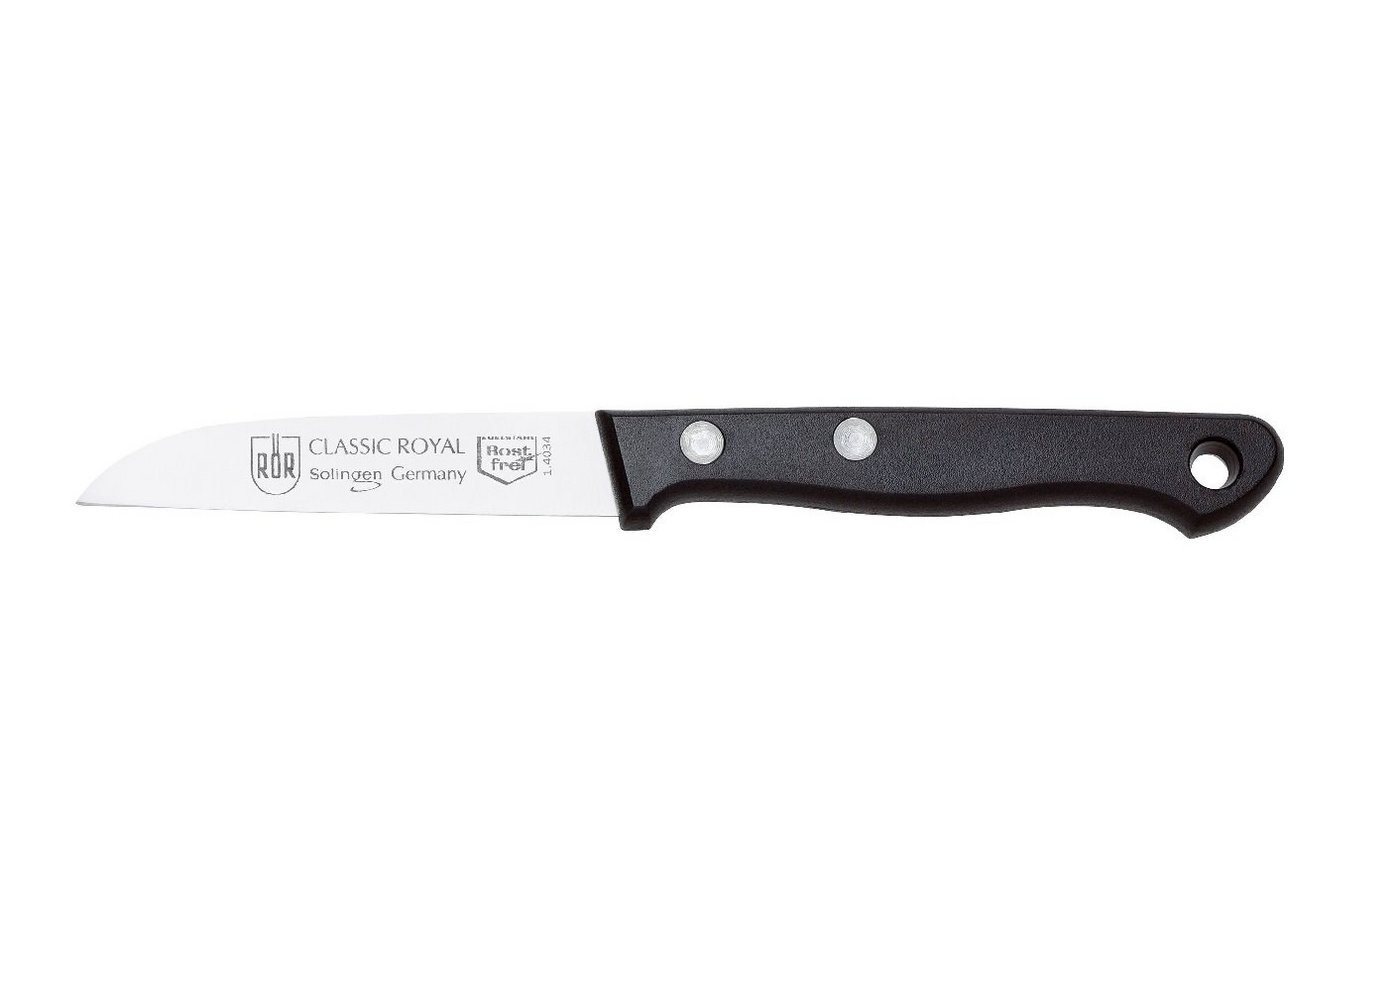 RÖR Kochmesser 10195, Classic Royal Küchenmesser, hochwertiger Messerstahl - Griff mit Nieten - Made in Solingen von RÖR